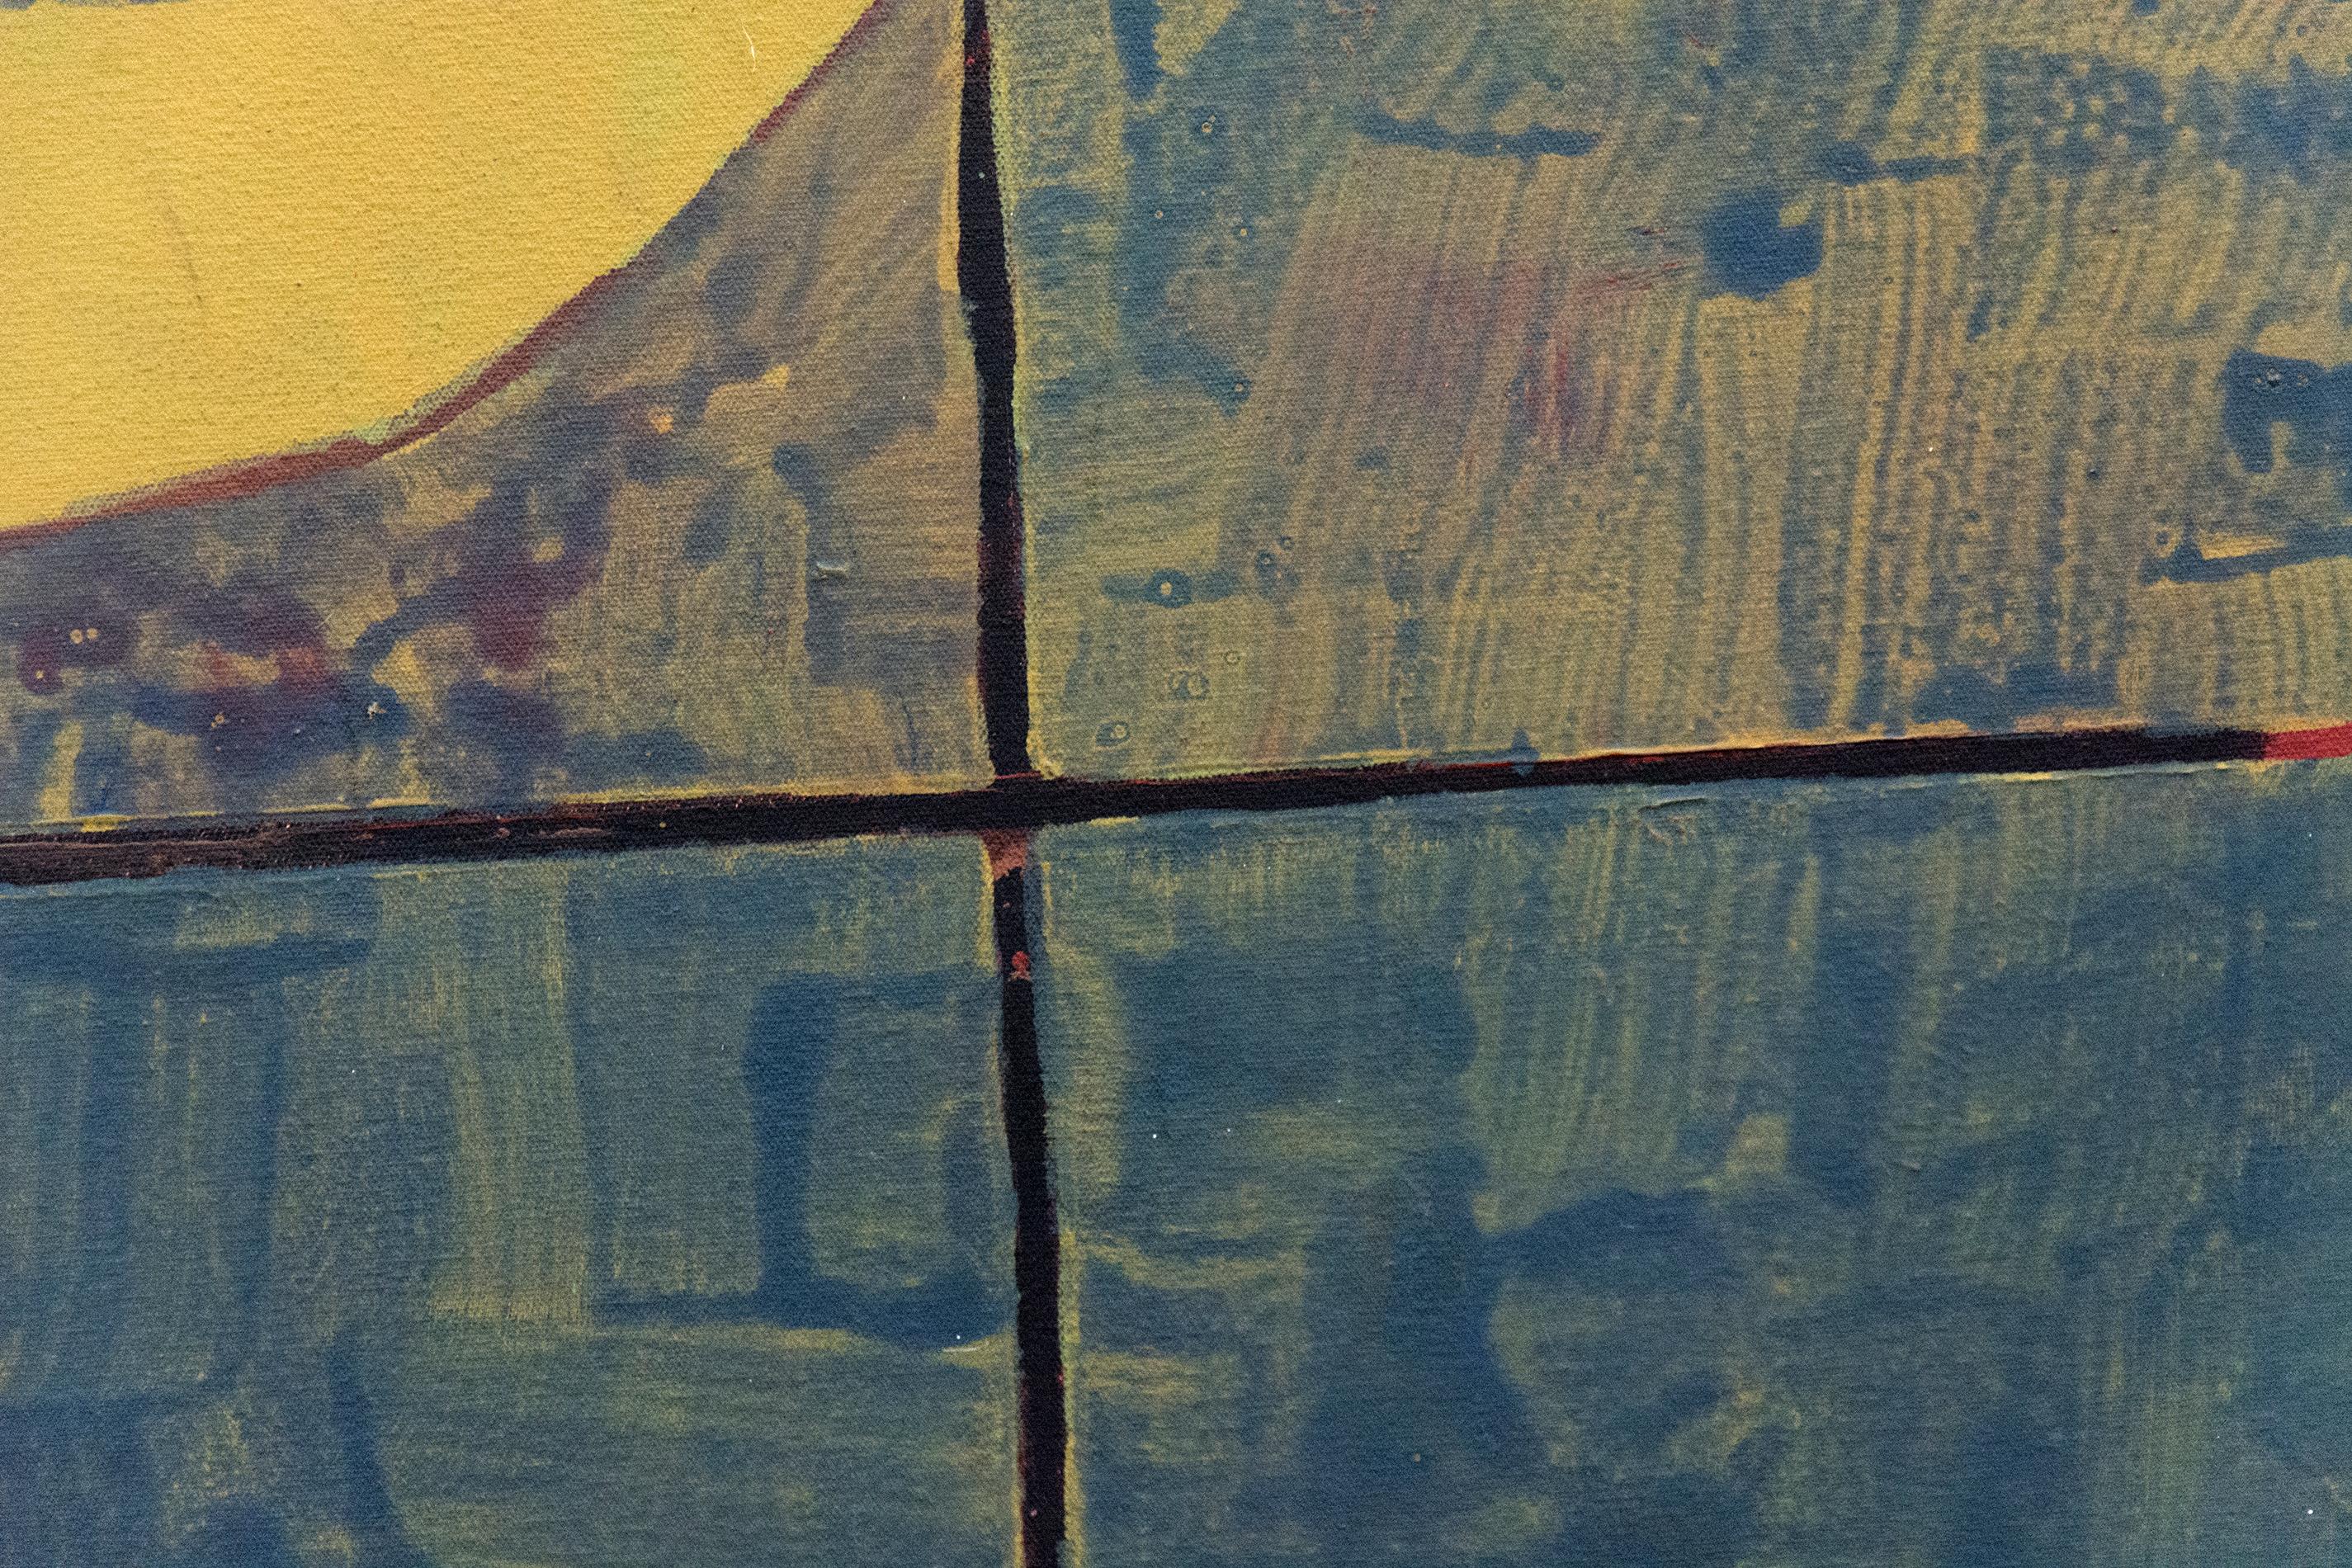 In diesem meisterhaften Acrylbild von Otto Rogers ist eine Blattform in strukturierte Passagen aus Rot, Moosgrün und Blau eingebettet. Diese lebendige und zugleich kontemplative Komposition, eines seiner letzten Gemälde, ist eine Erkundung des